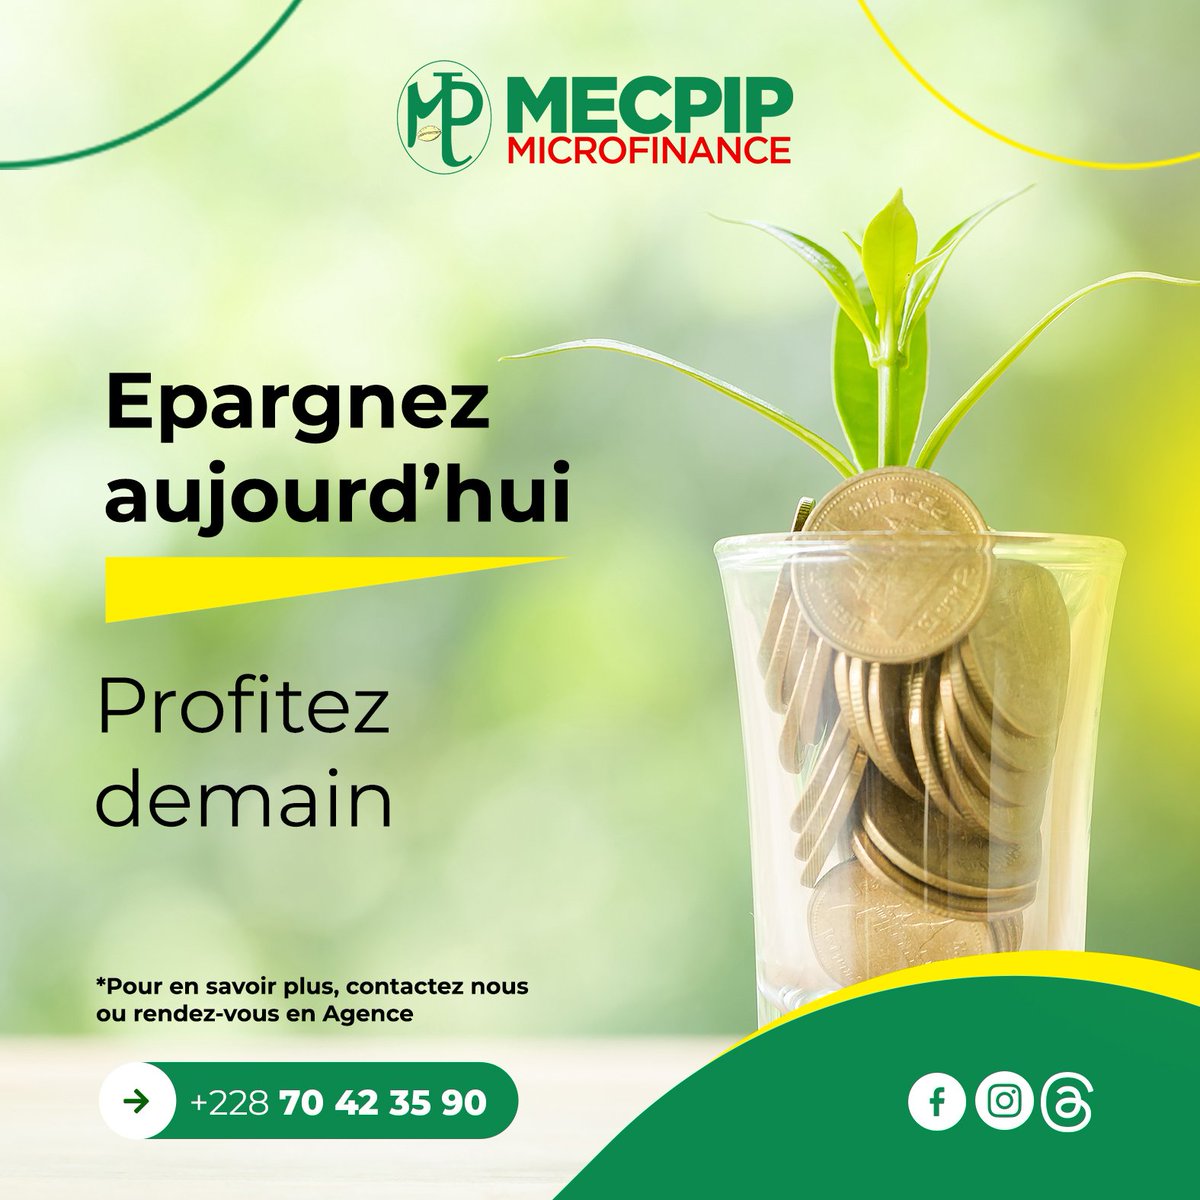 Epargnez à la MECPIP MICROFINANCE pour un avenir plus serein 😀 
 #mecpip #finance #epargne #Microfinance